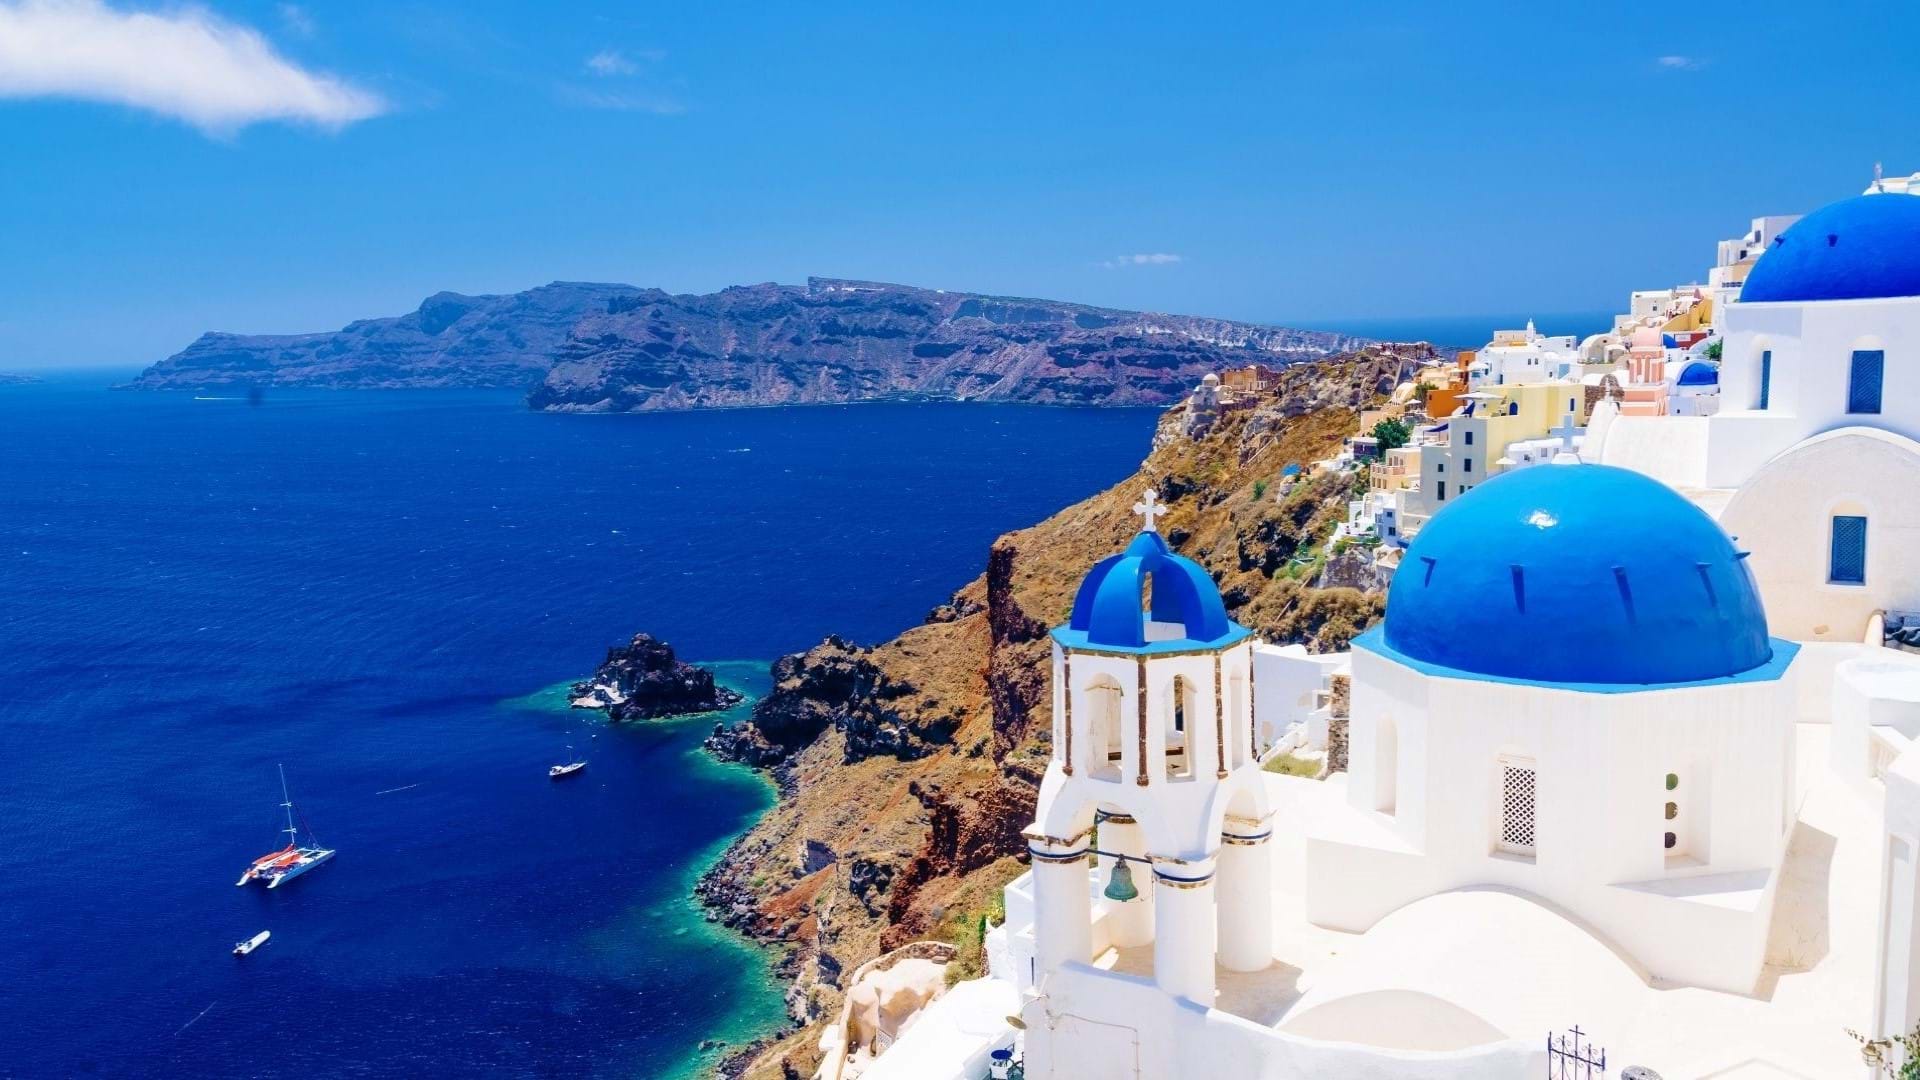 Pogledc iz mesta Tira ka zalivu i luci ostrva Santorini u Grčkoj.